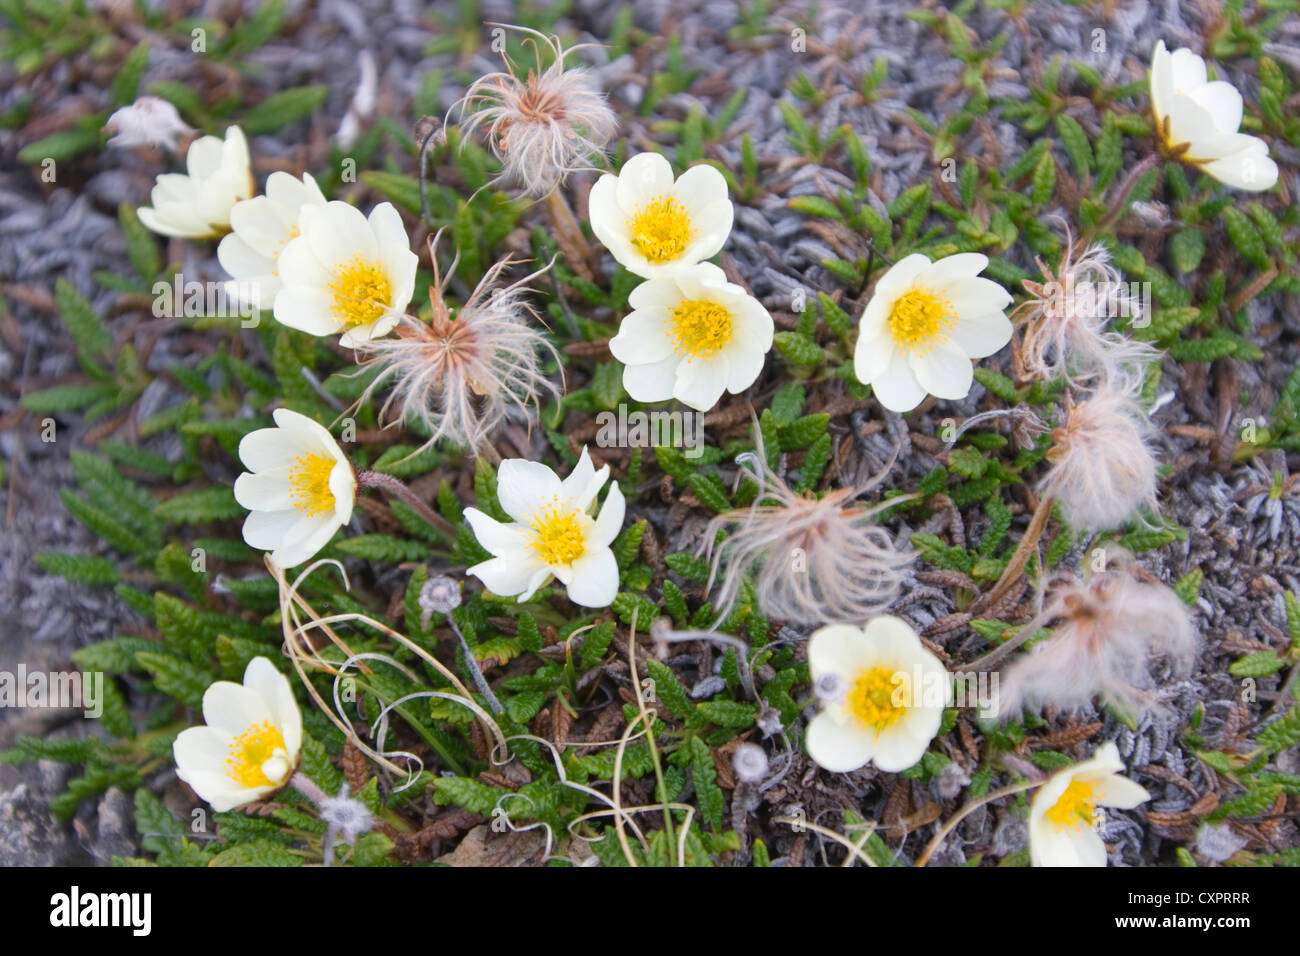 Tufted saxifrage (Saxifraga cespitosa), Liefdefjord, Spitsbergen, Norway Stock Photo